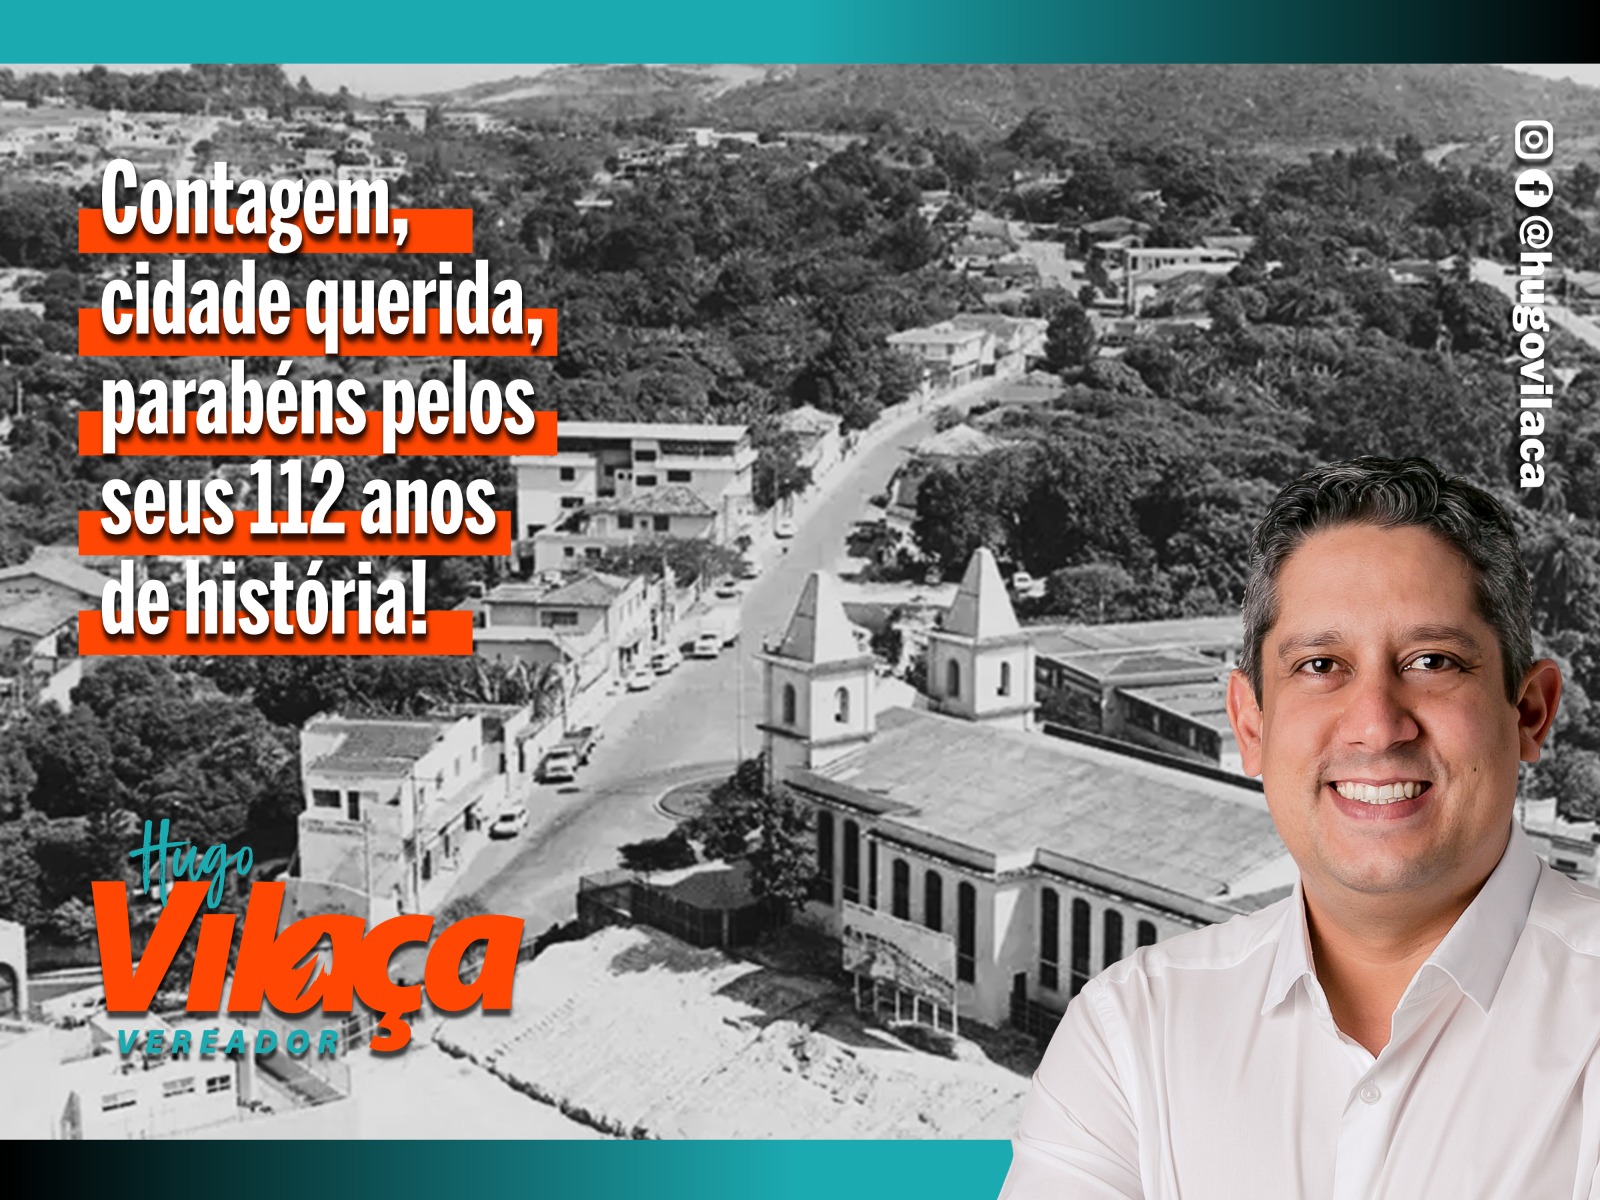 Hugo Vilaça Parabeniza Contagem pelos 112 Anos de História e Progresso